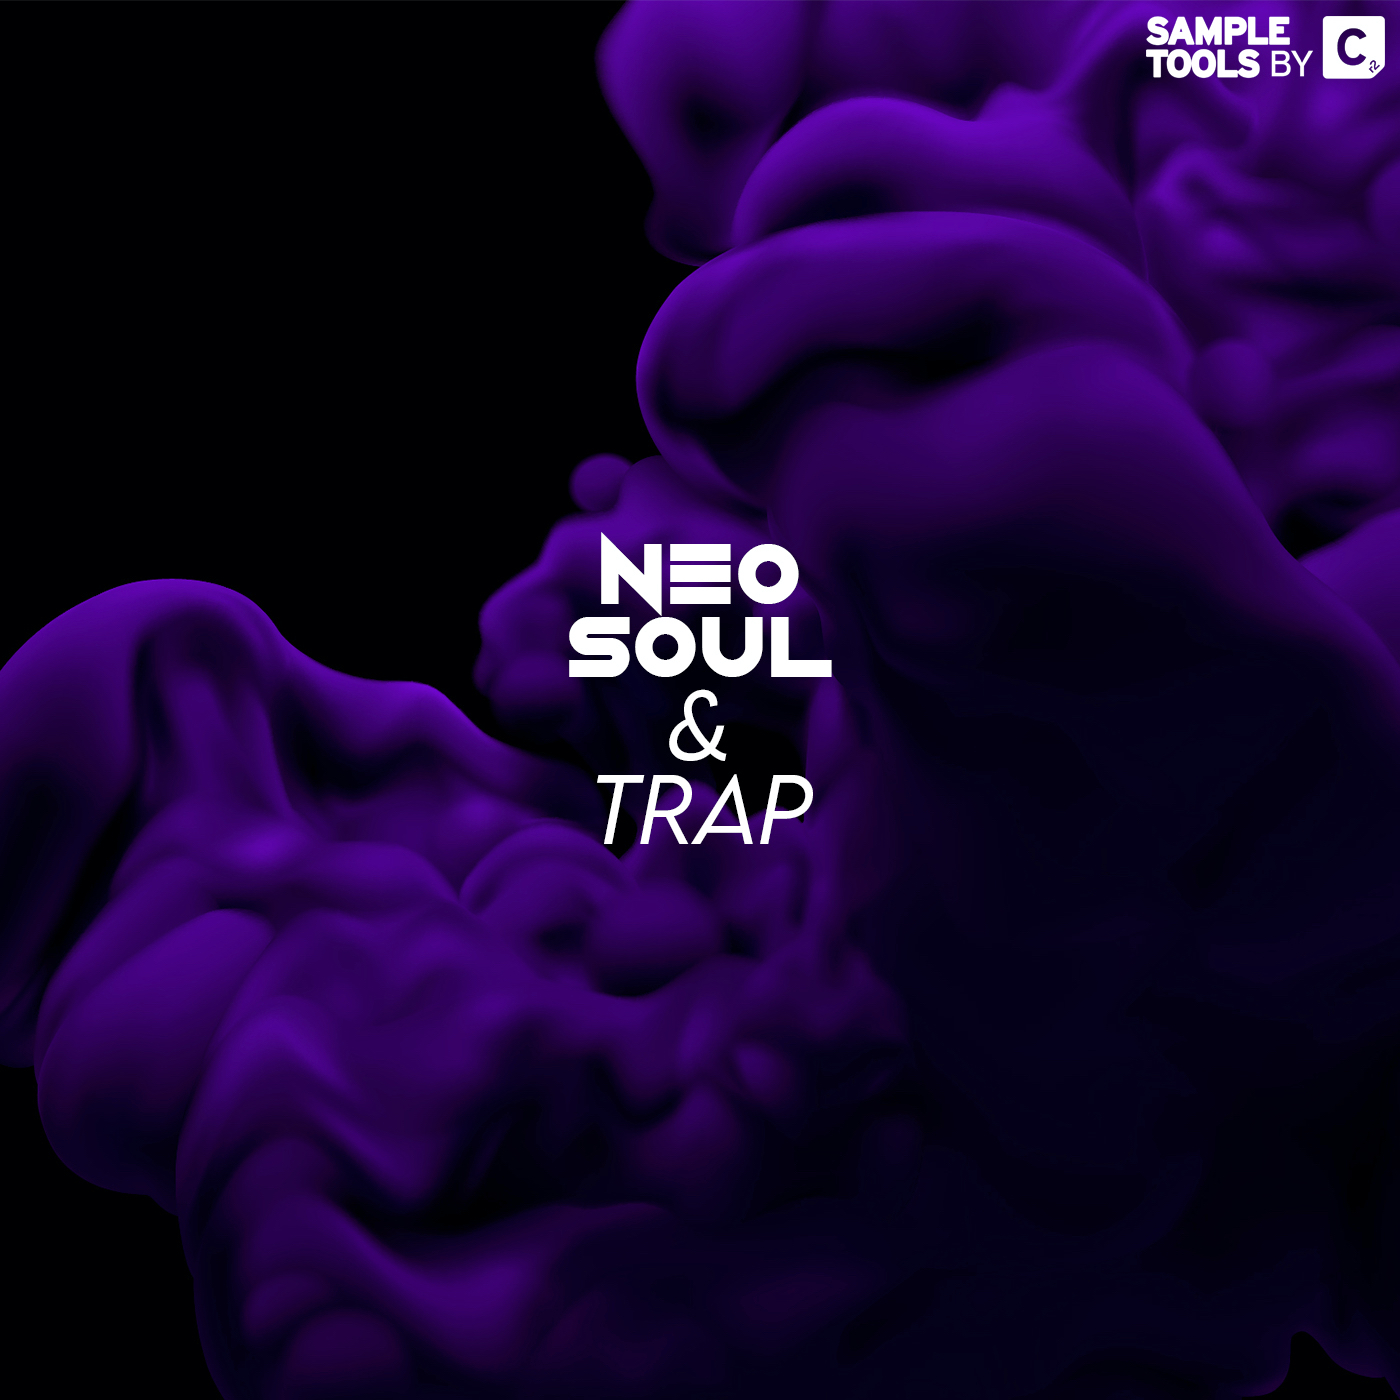 Neo Soul & Trap